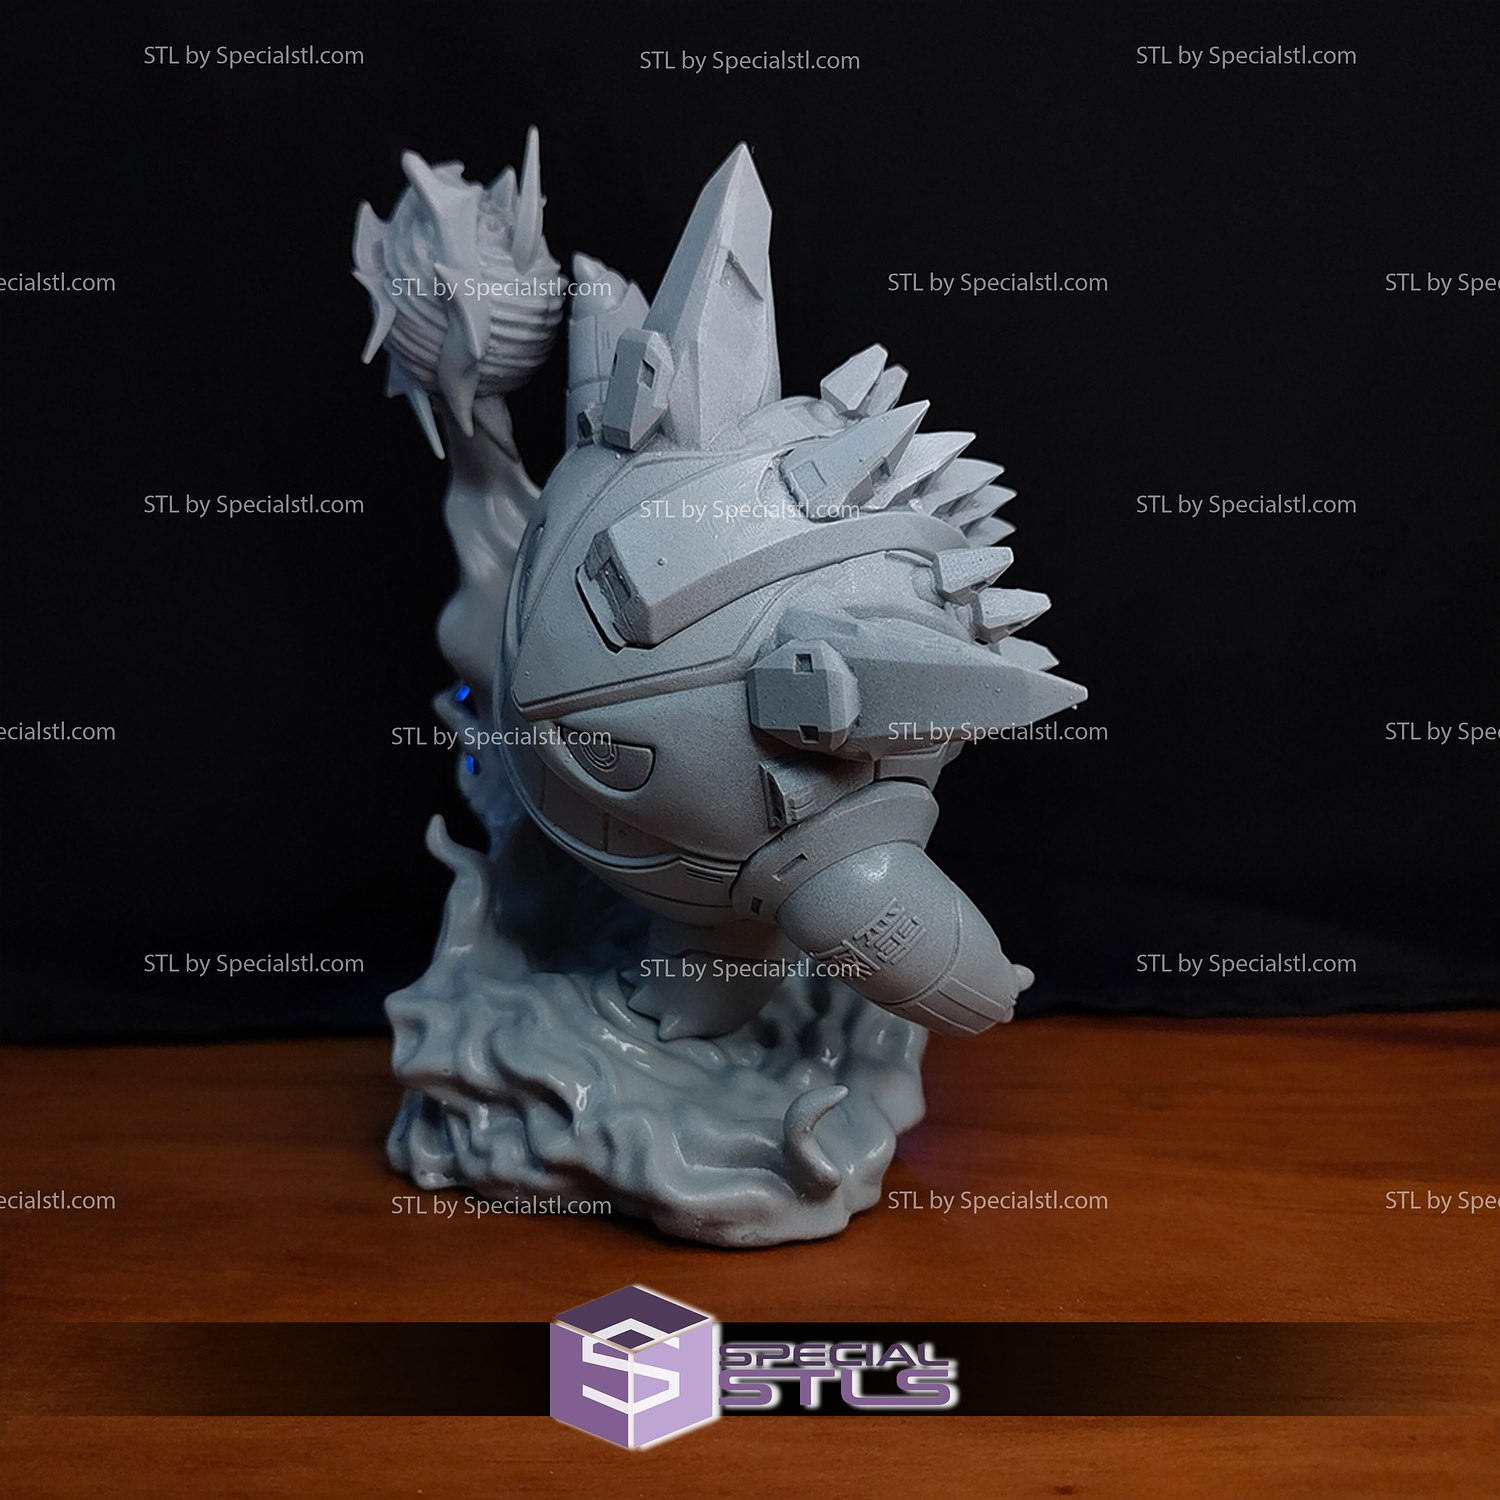 Mecha Gengar 3D Printing Model Pokemon STL Files